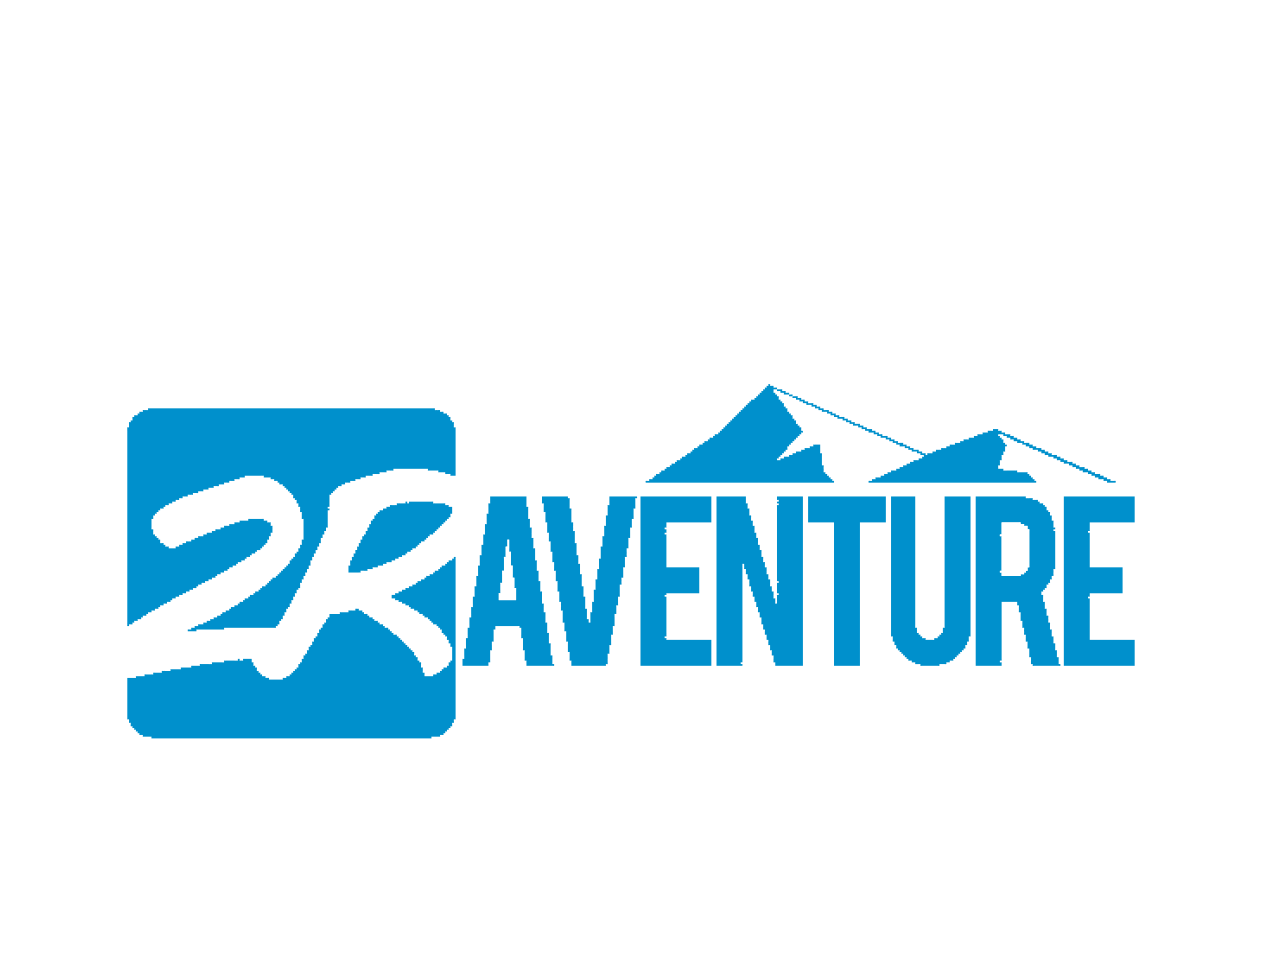 2R Aventure